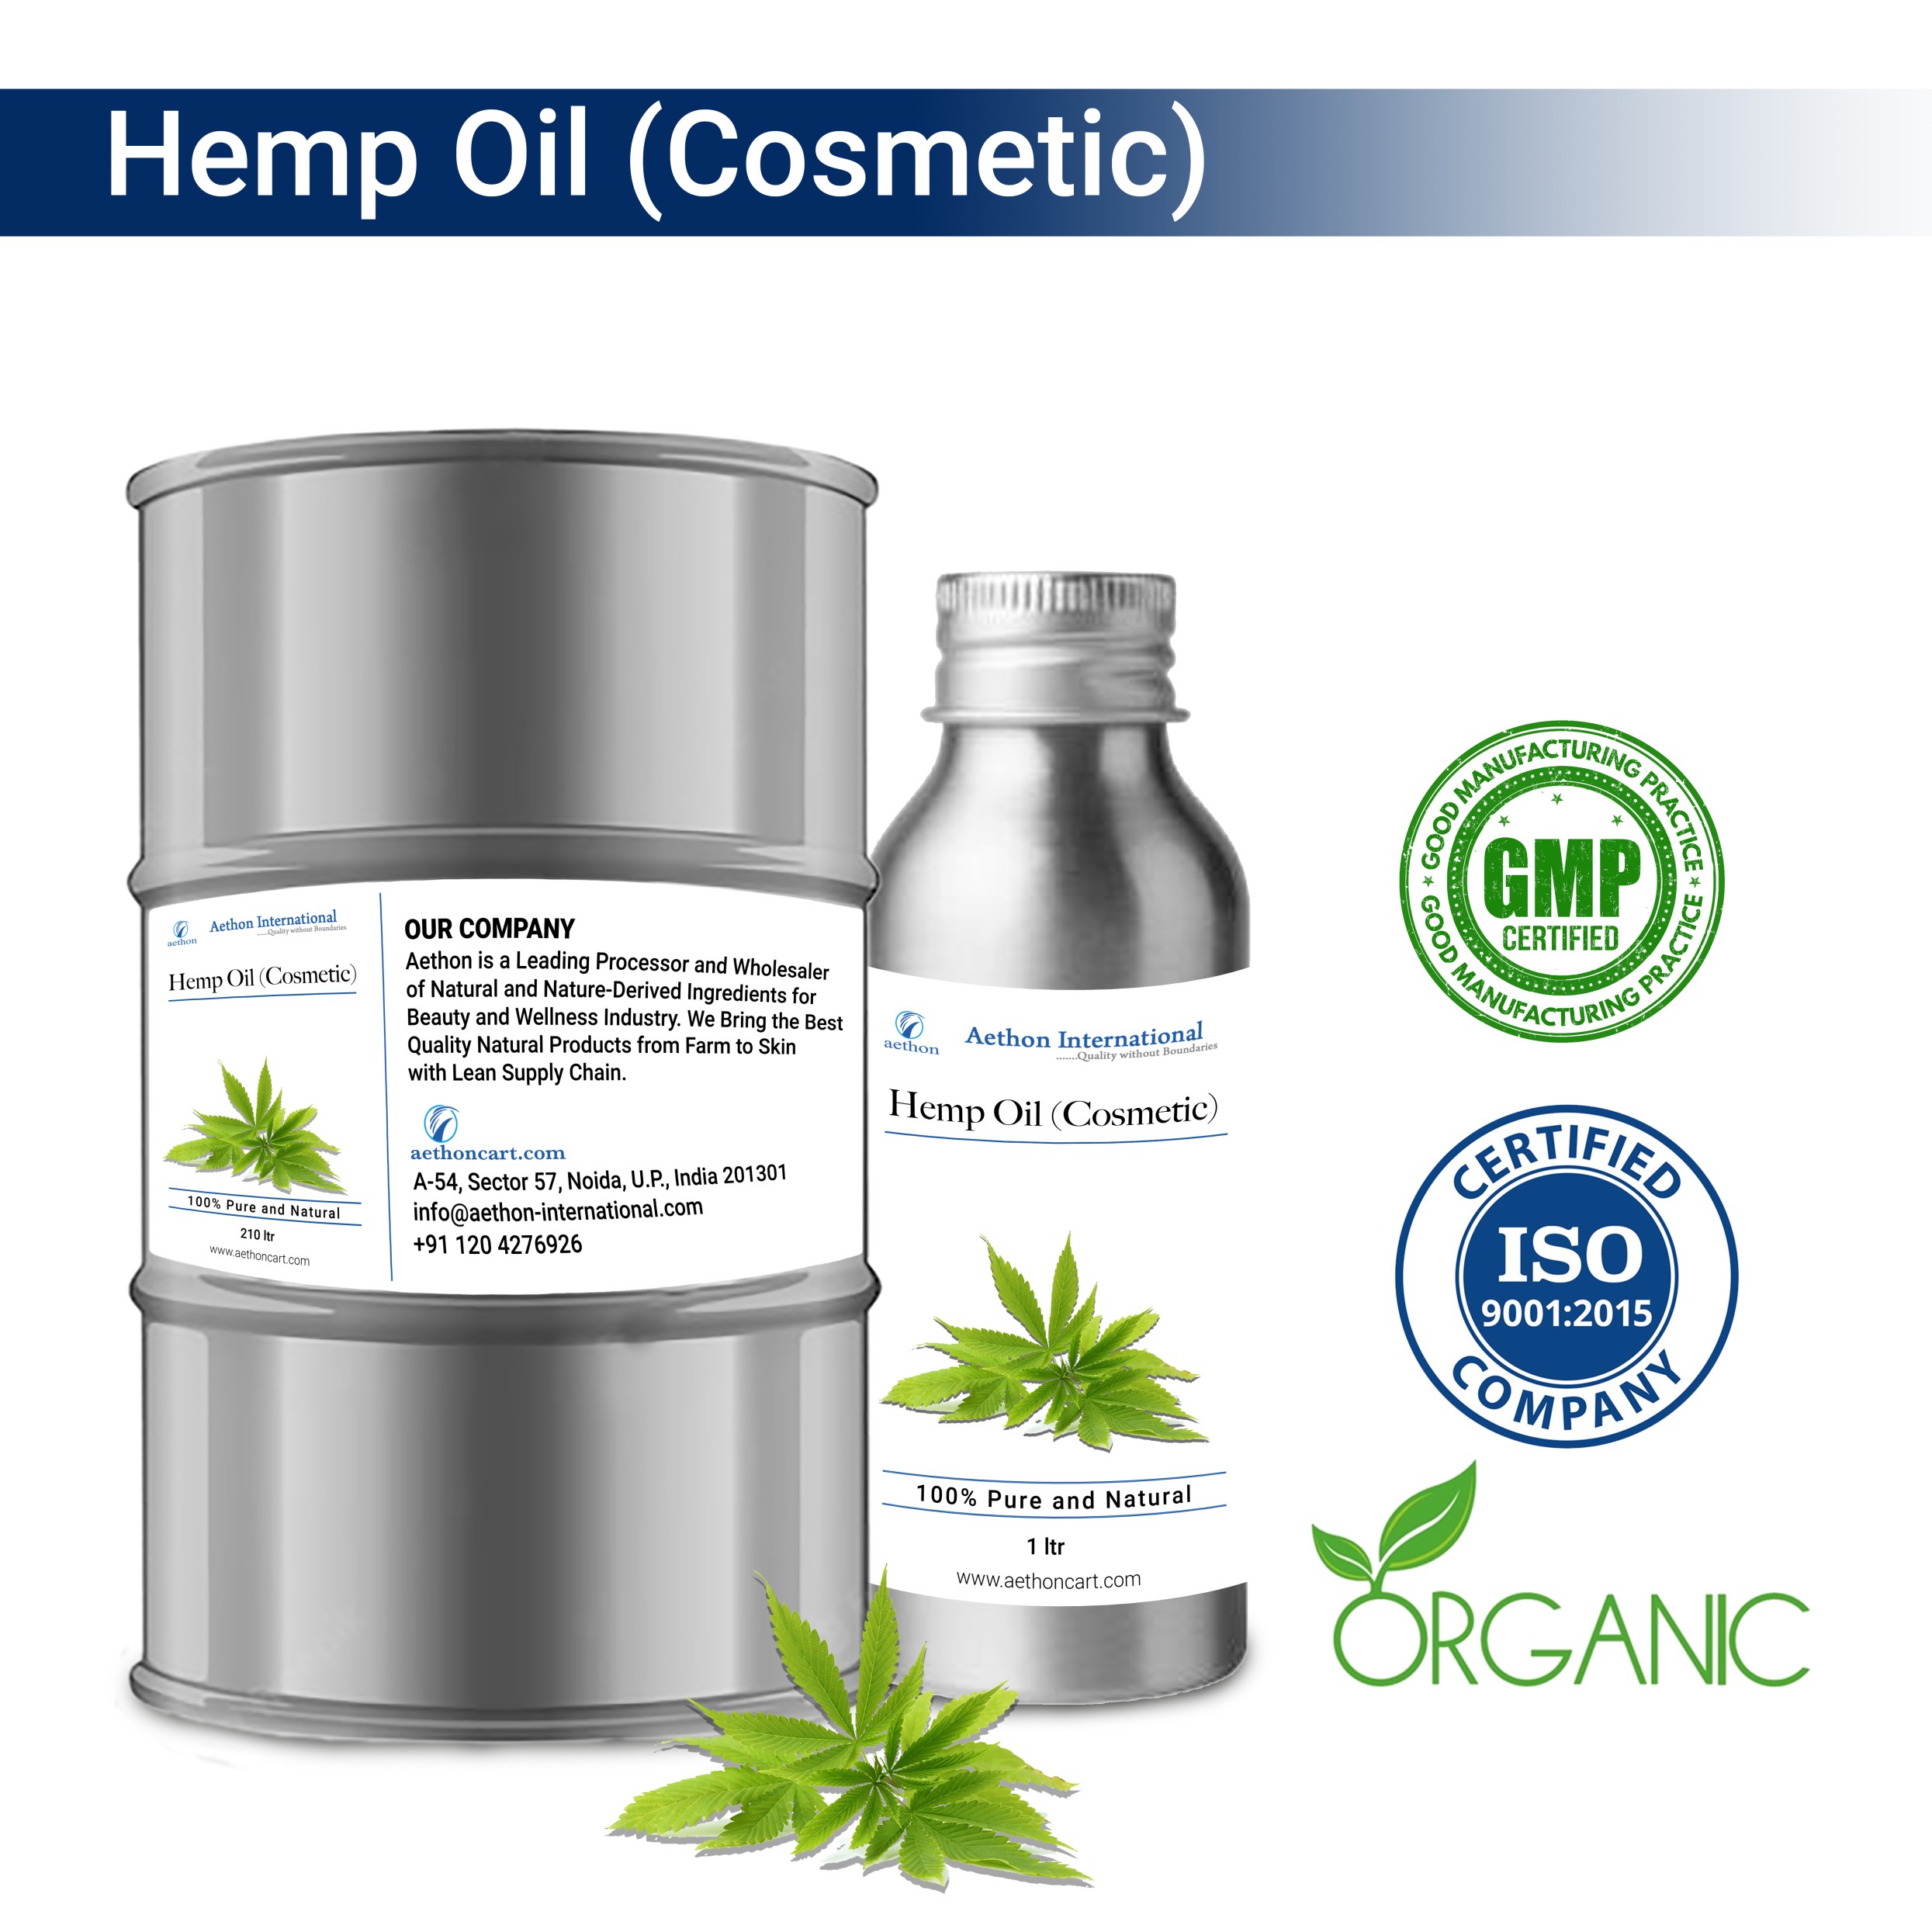 Hemp Oil (Cosmetic)